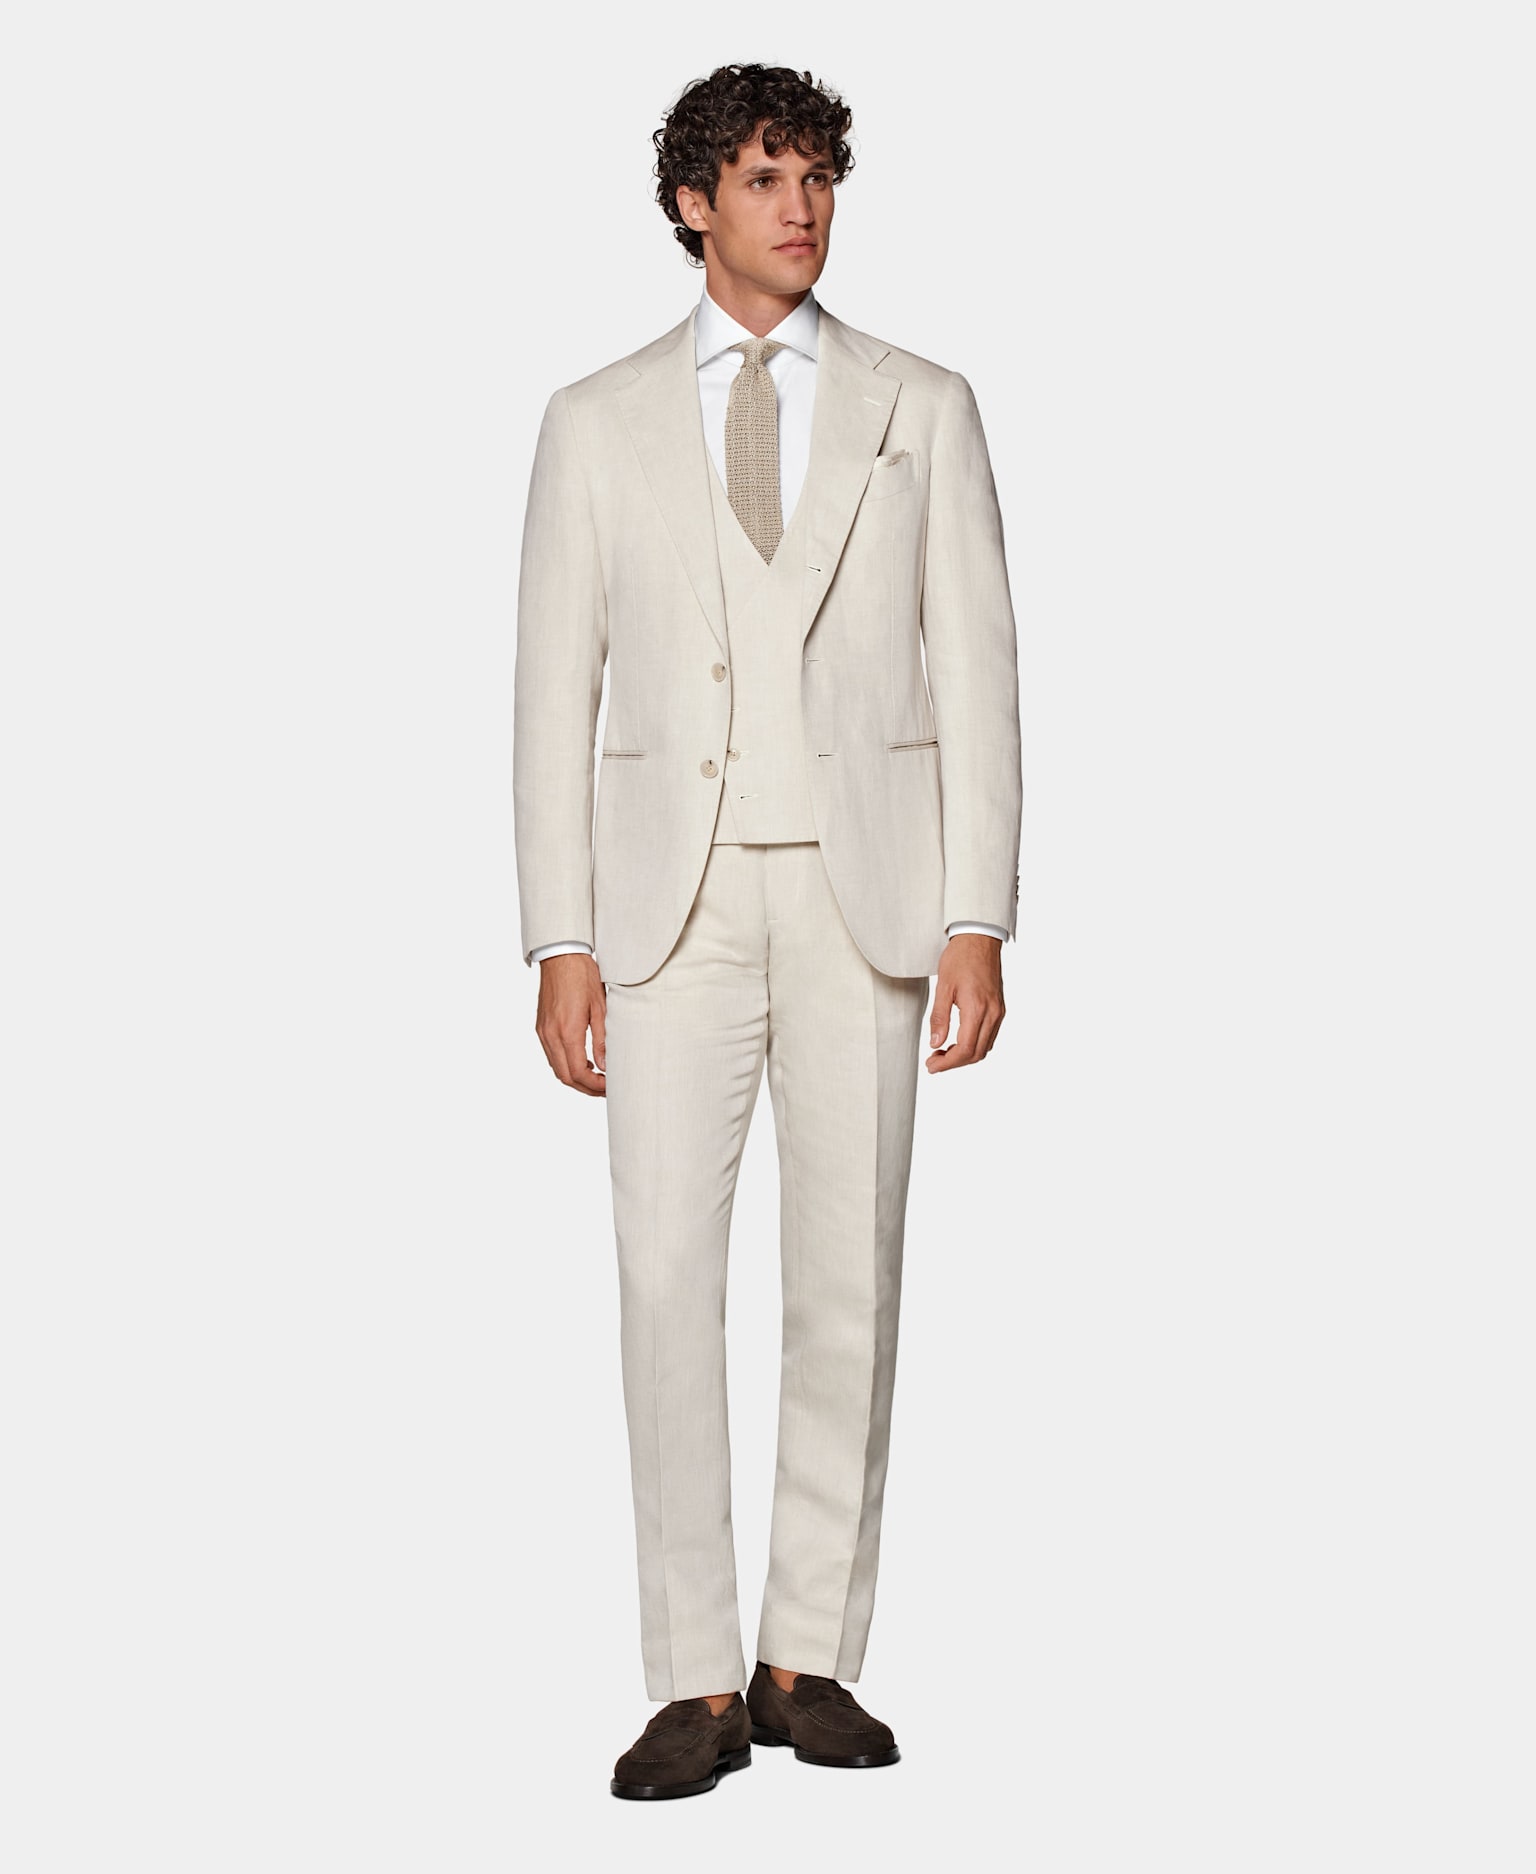 Sommerhochzeit-Outfit für Herren: Hellbrauner dreiteiliger Anzug mit weißem Hemd und brauner Strickkrawatte aus Seide.